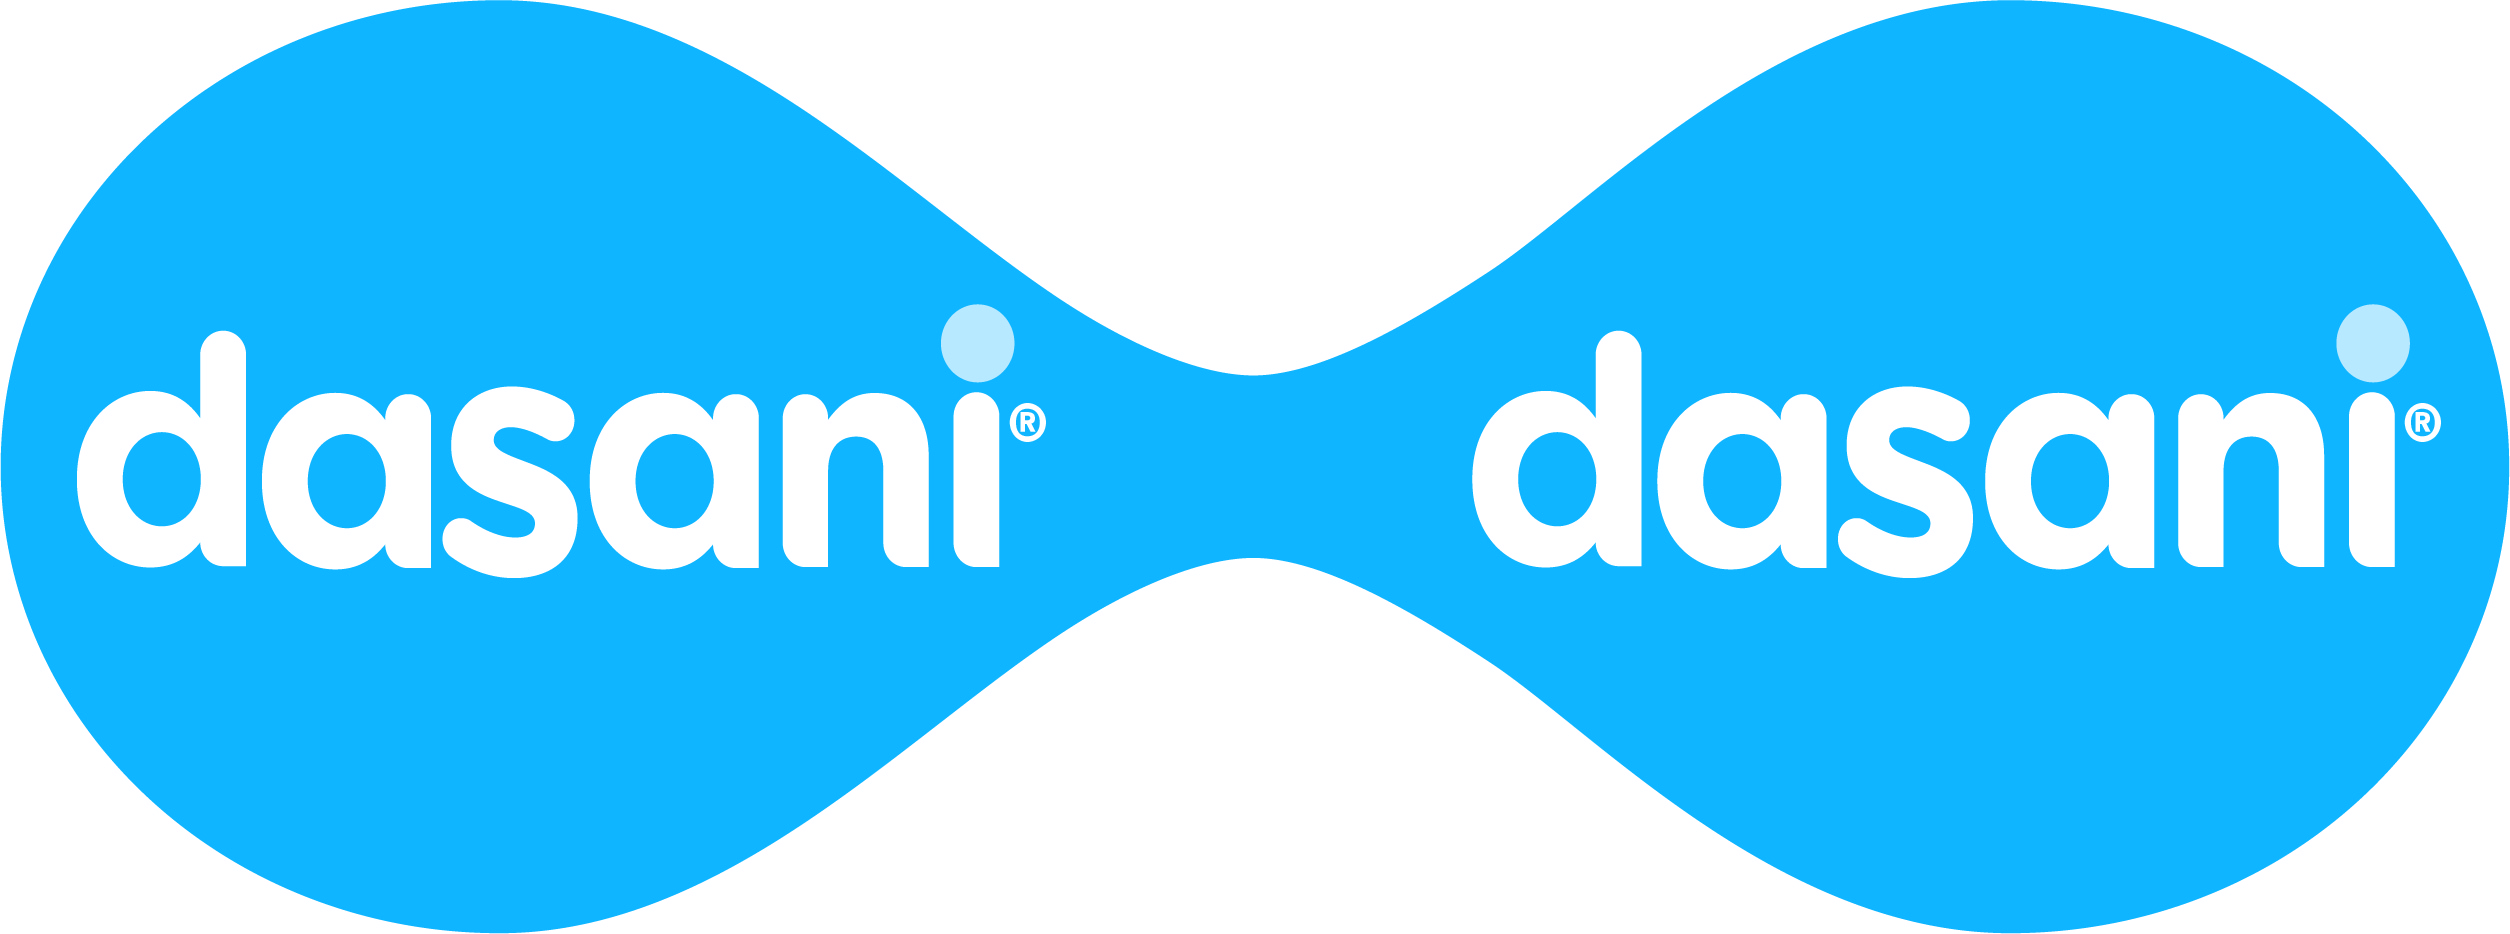 Logotipo de Dasani